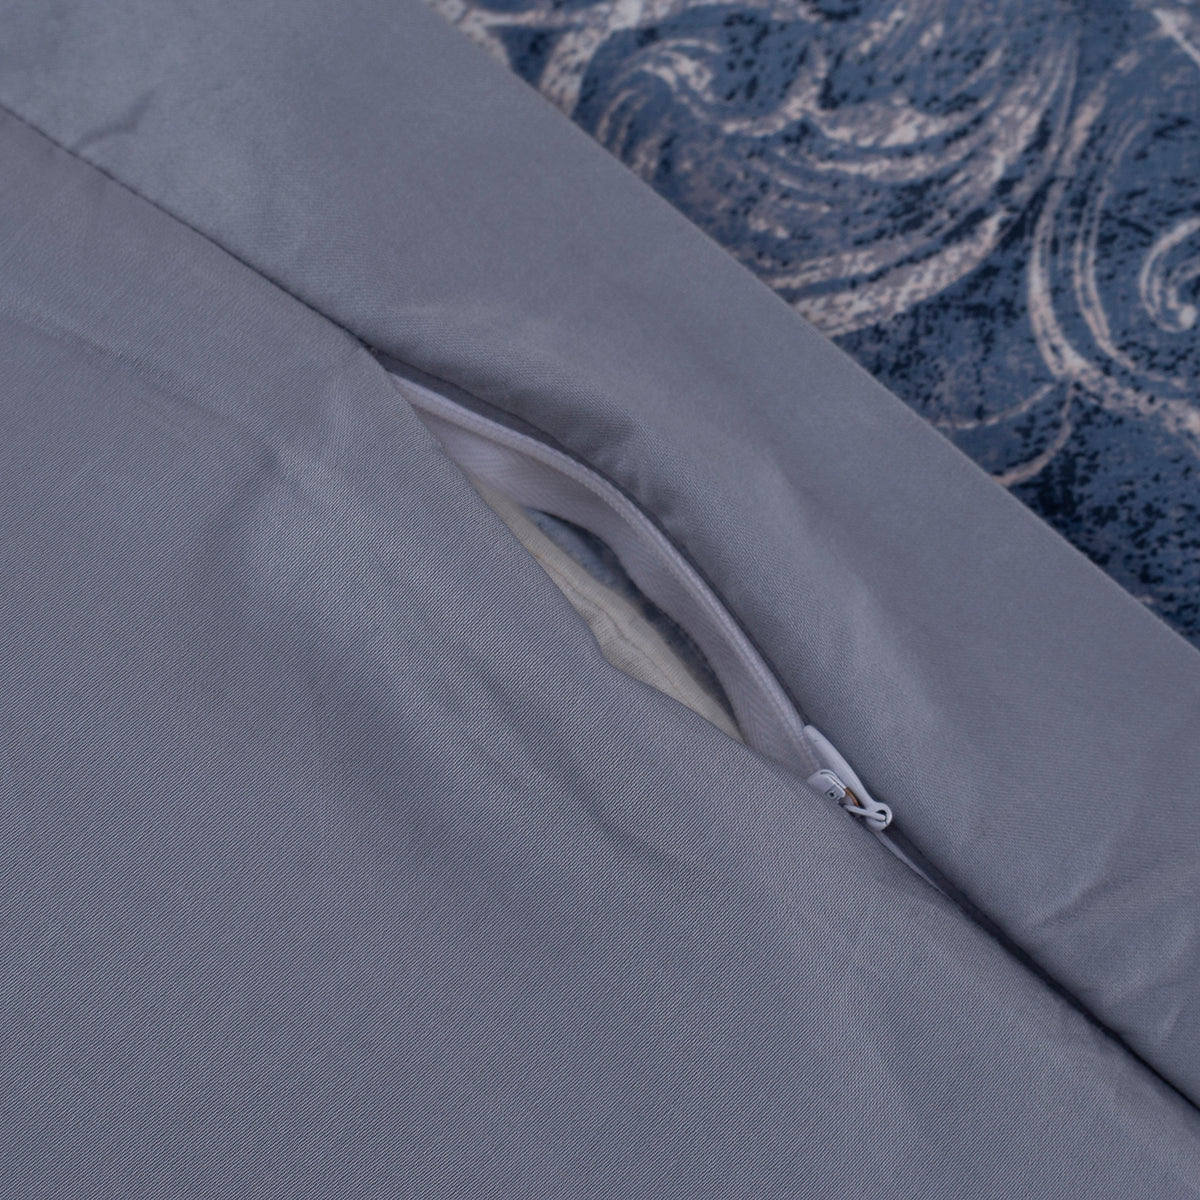 Grandeur Classic Prime 100%Cotton Print 3 Pc Double Duvet Cover with Pillow Case